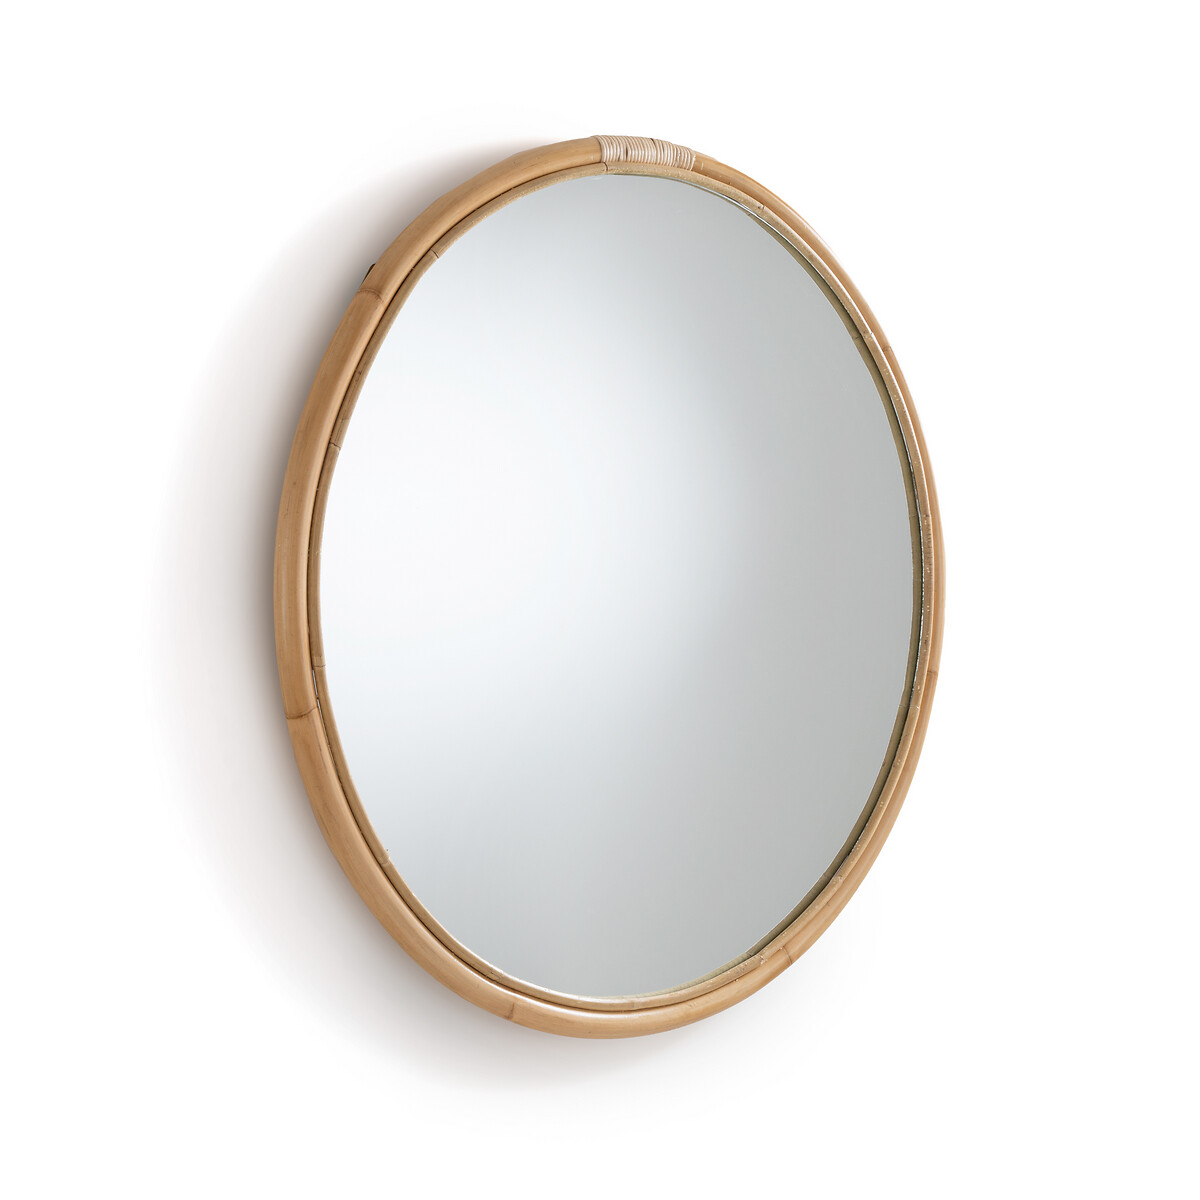 Зеркало круглое из ротанга 90 см Nogu единый размер бежевый зеркало круглое из ротанга 120 см nogu единый размер бежевый